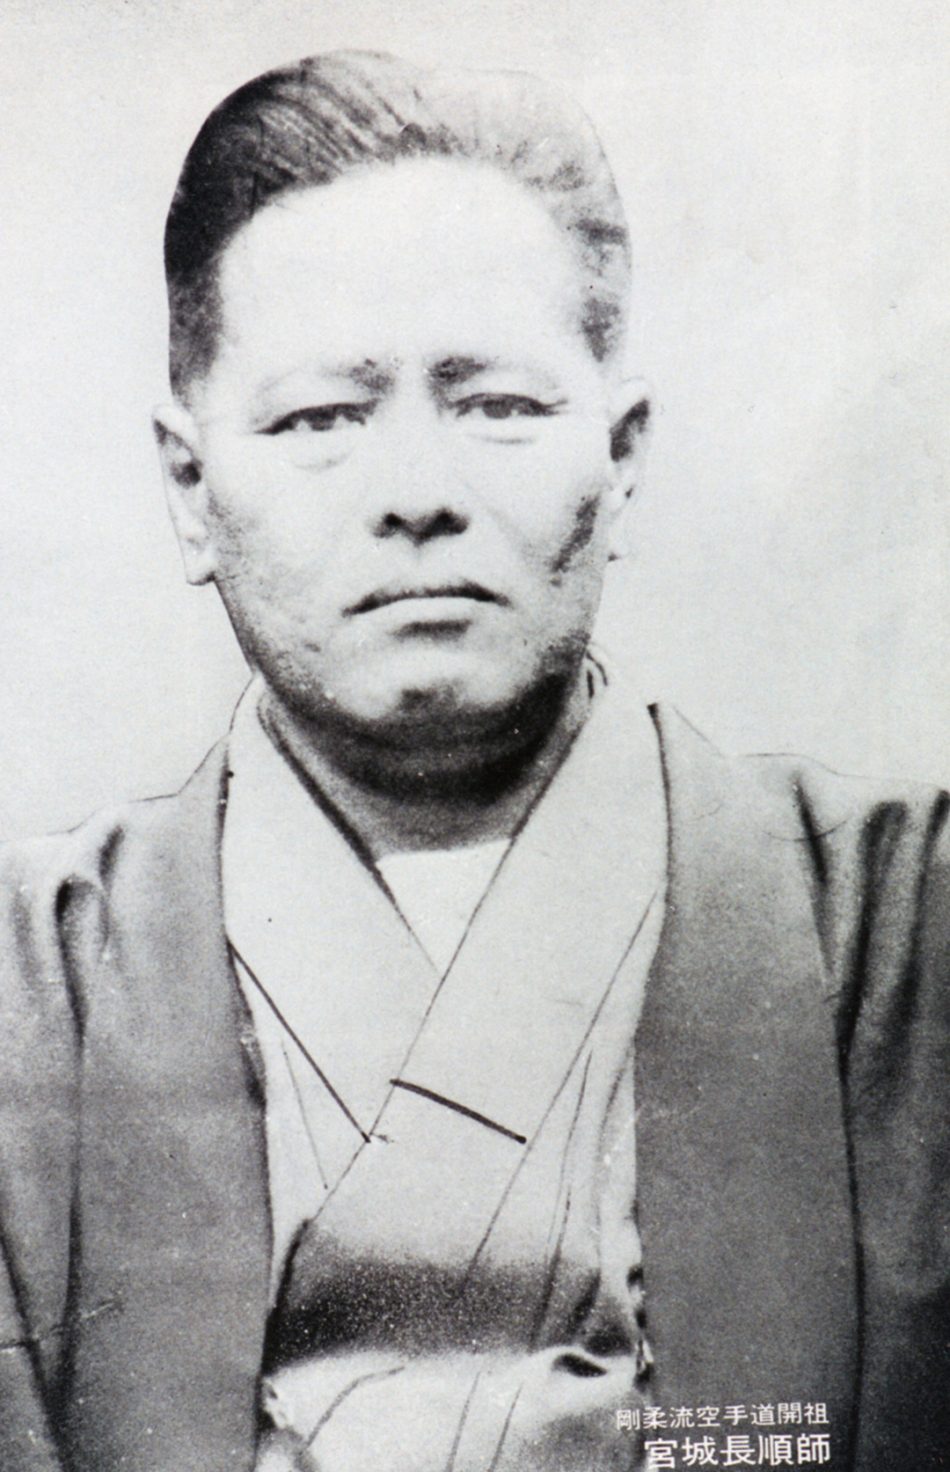 Chojun Miyagi, the founder of Goju-Ryu Karate